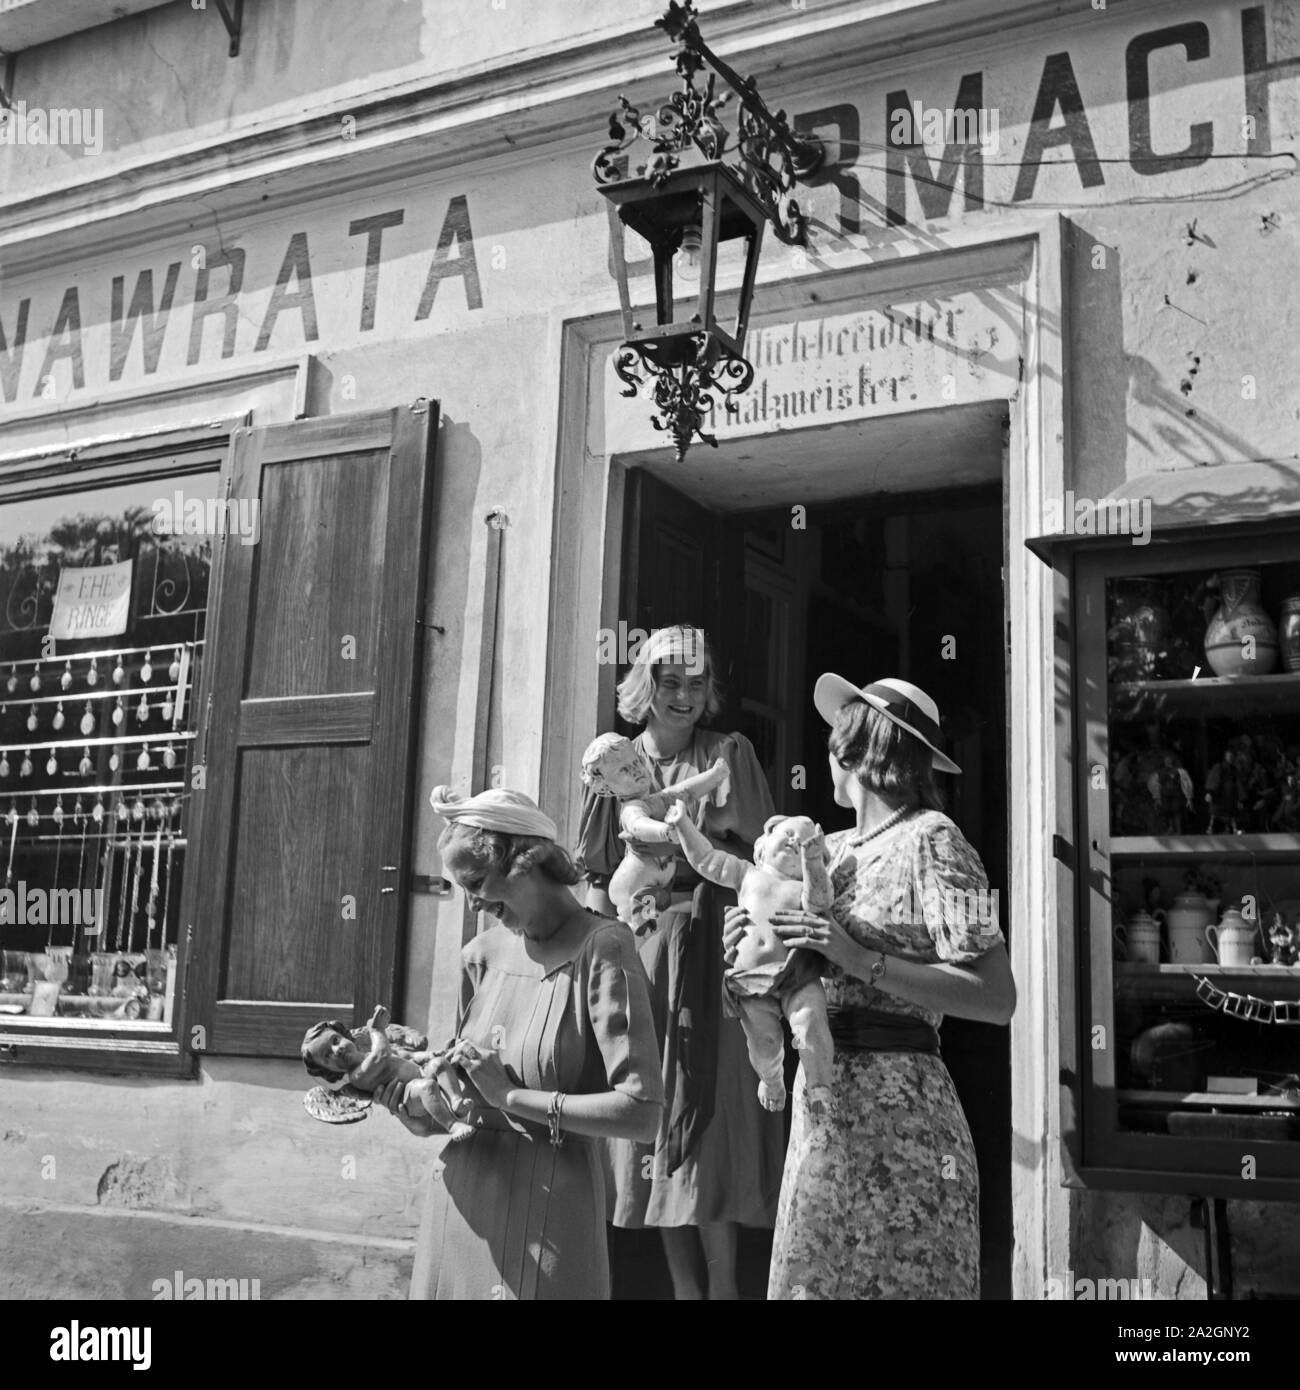 Drei junge Frauen haben in einem Uhrmachergeschäft  Kunsthandwerksgegenstände eingekauft, Österreich 1930er Jahre. Three young  women bought some craftwork items at a clock maker's shop, Austria 1930s  Stock Photo - Alamy